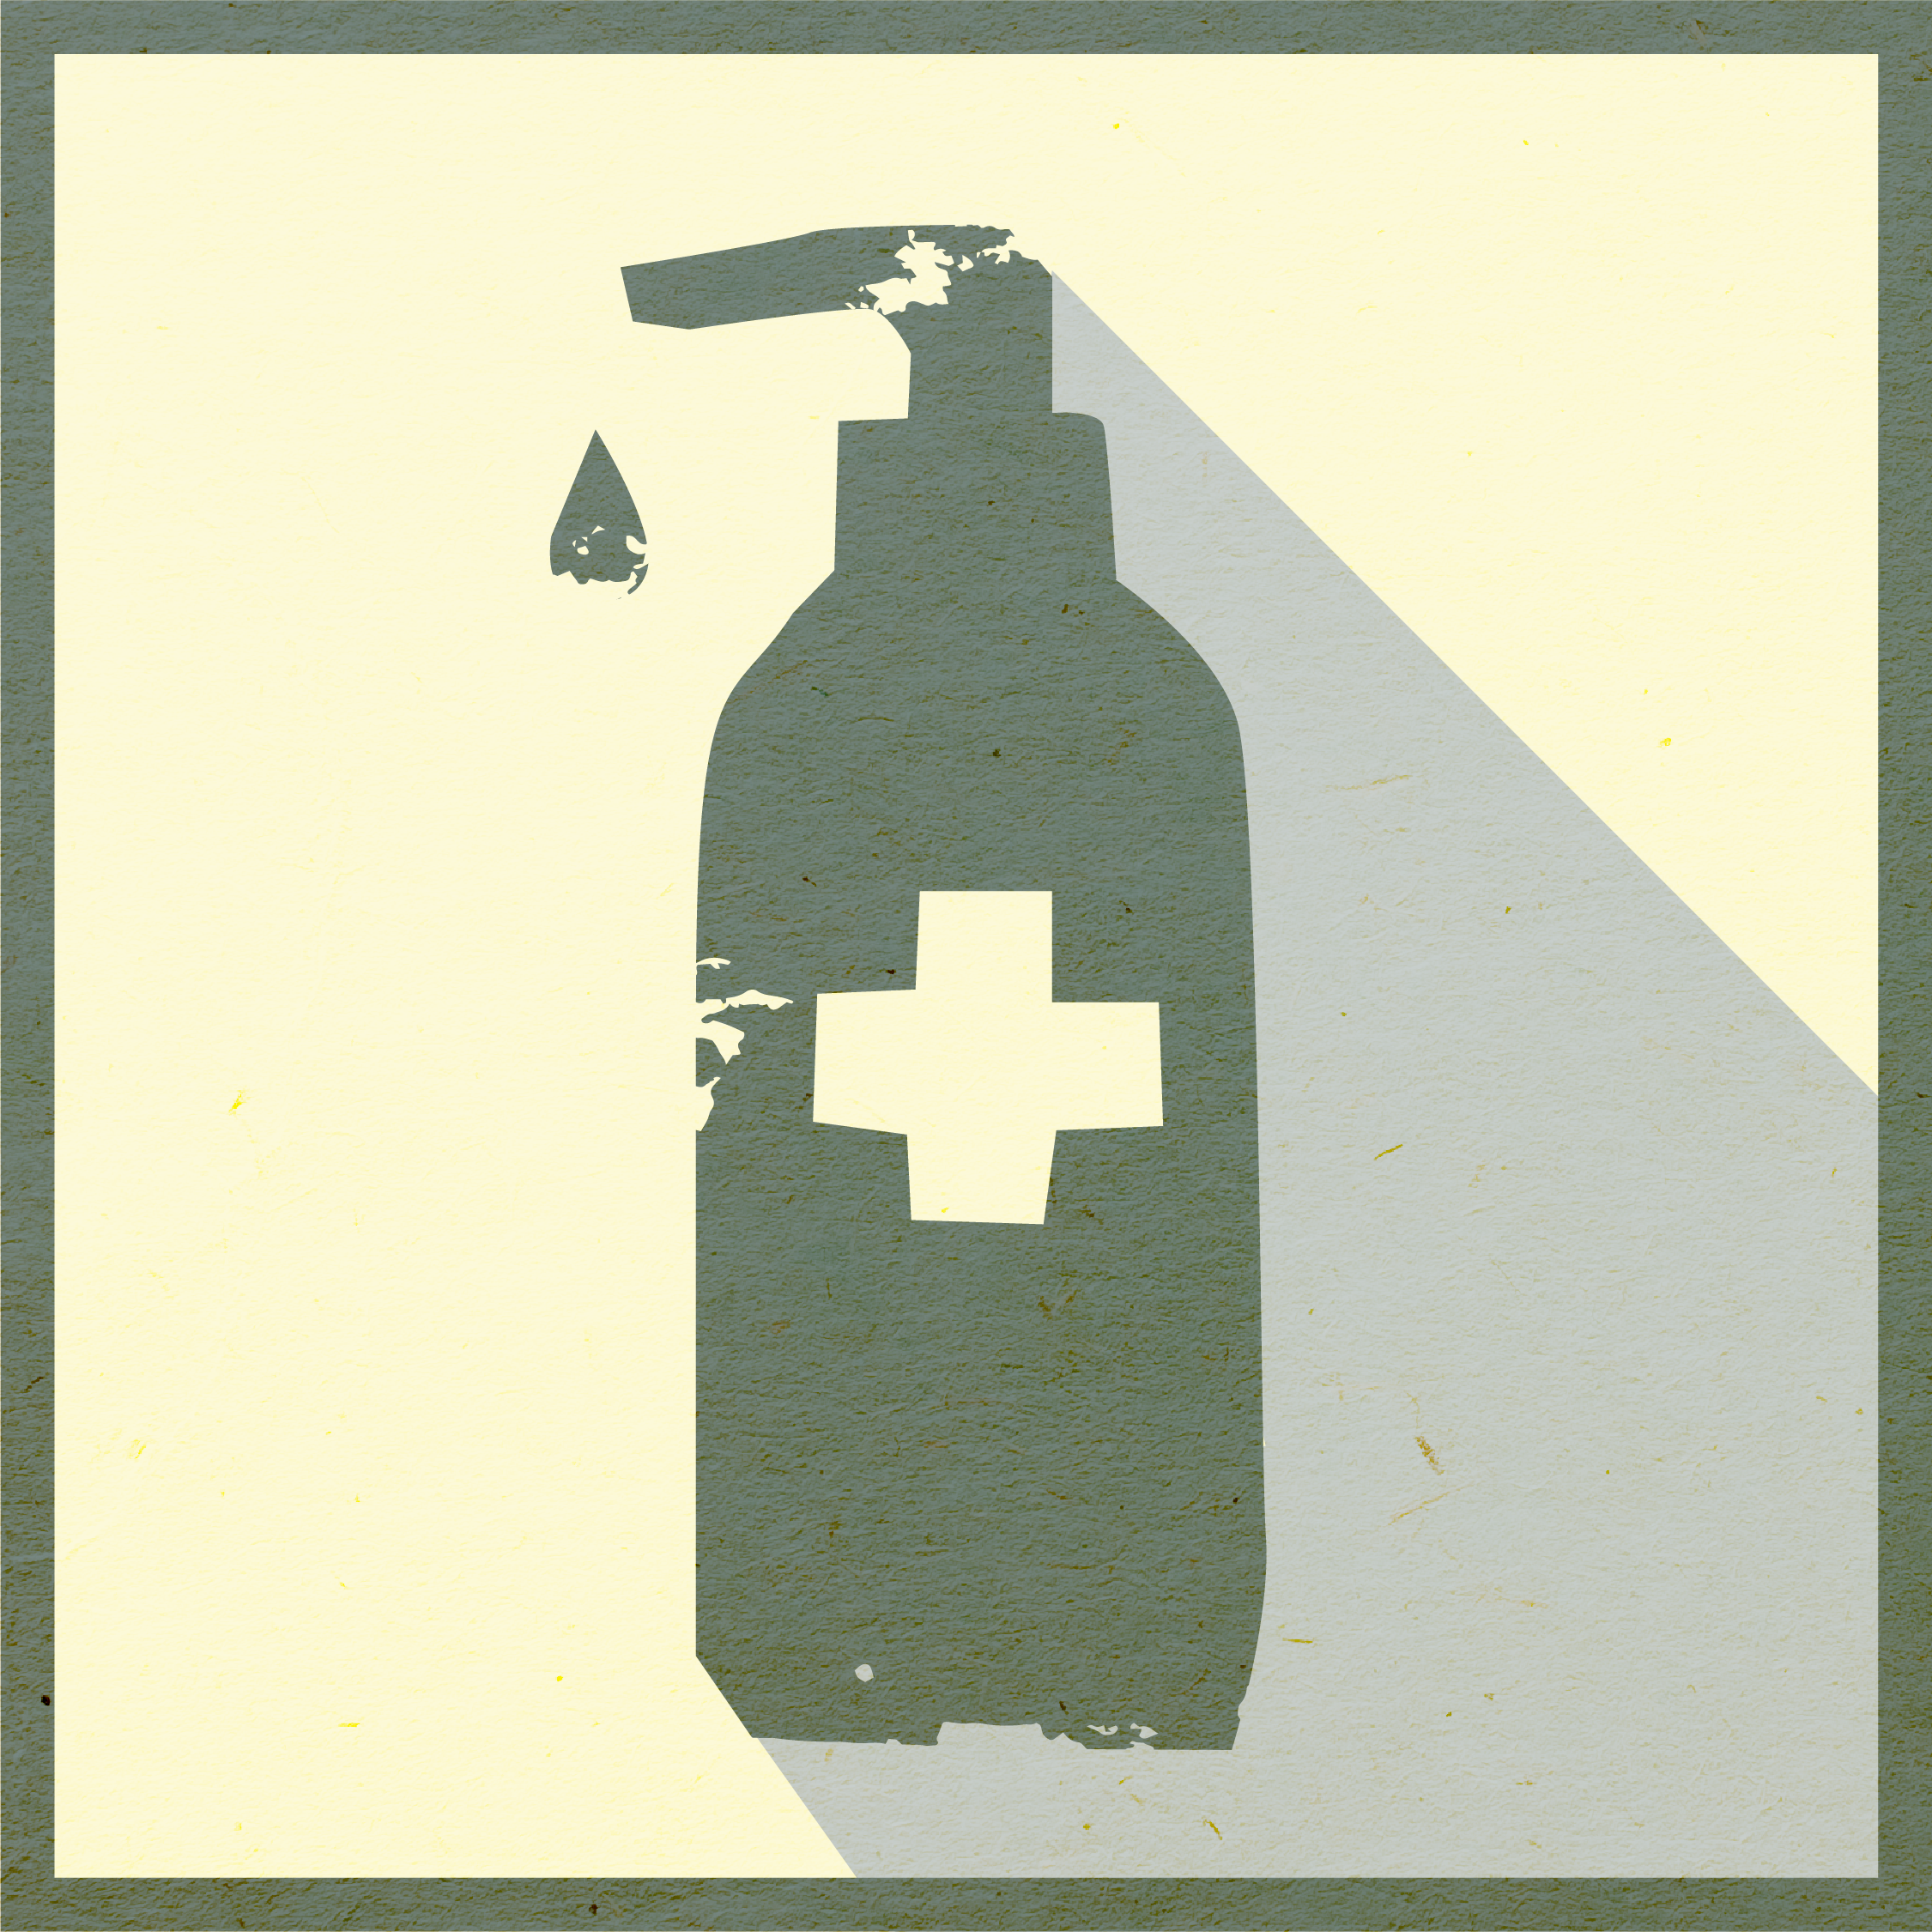 Framed illustration of a bottle of hand sanitizer